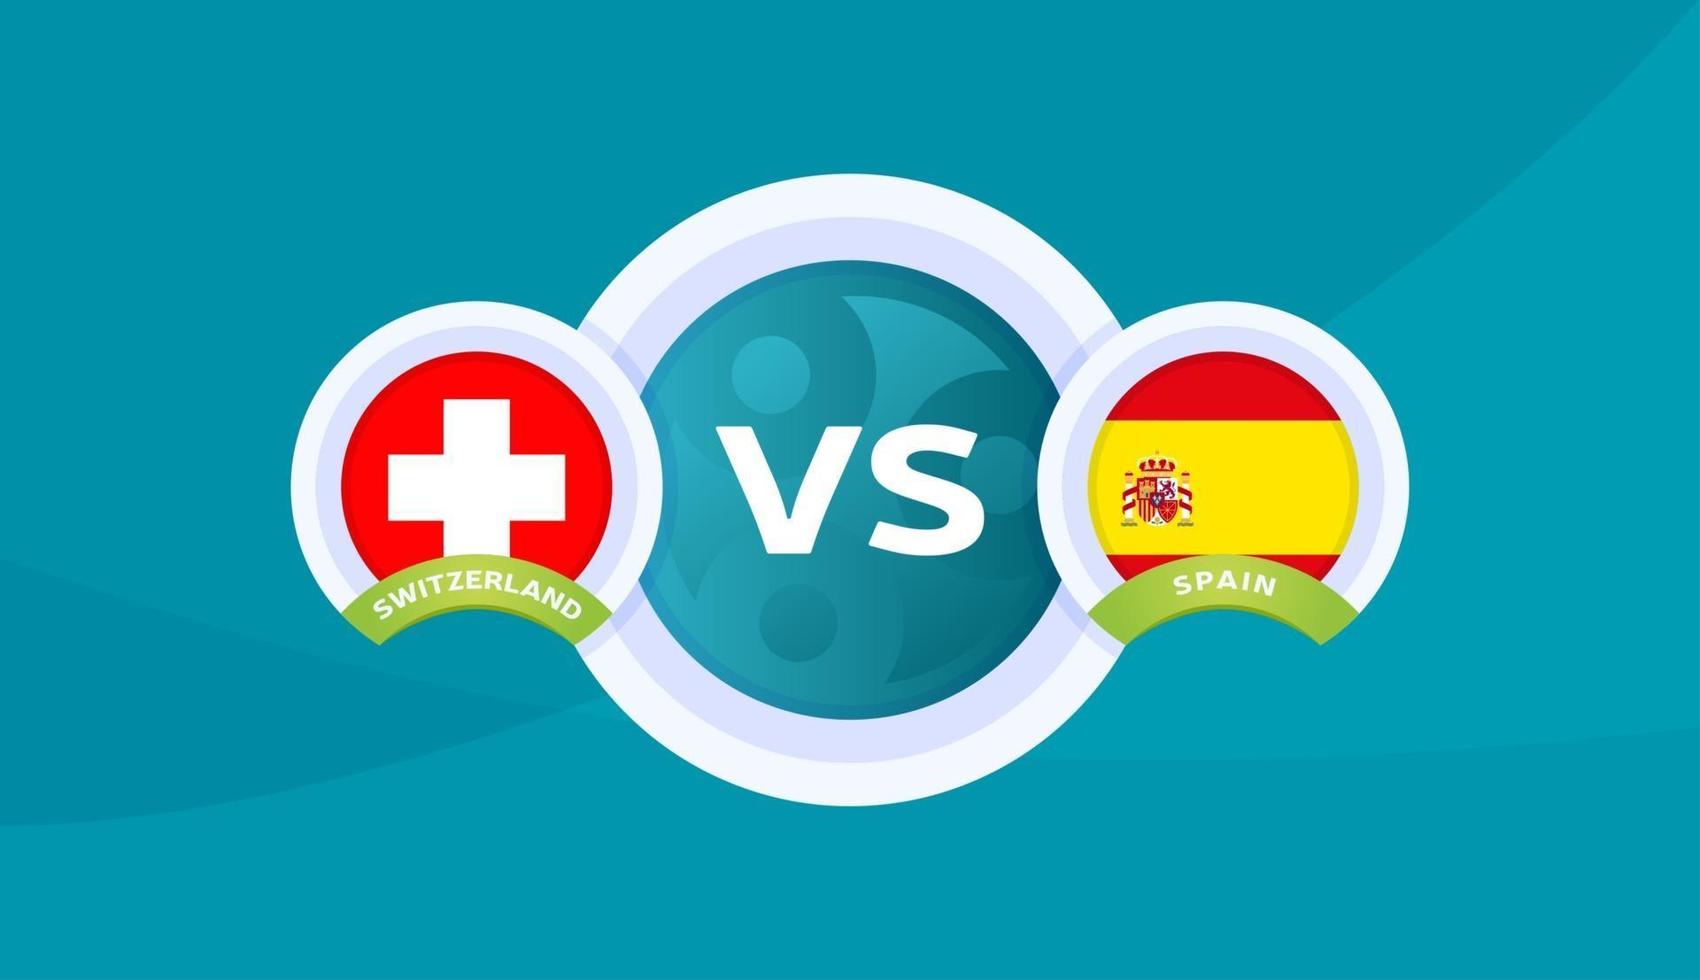 zwitserland vs spanje wedstrijd vector illustratie voetbal 2020 kampioenschap